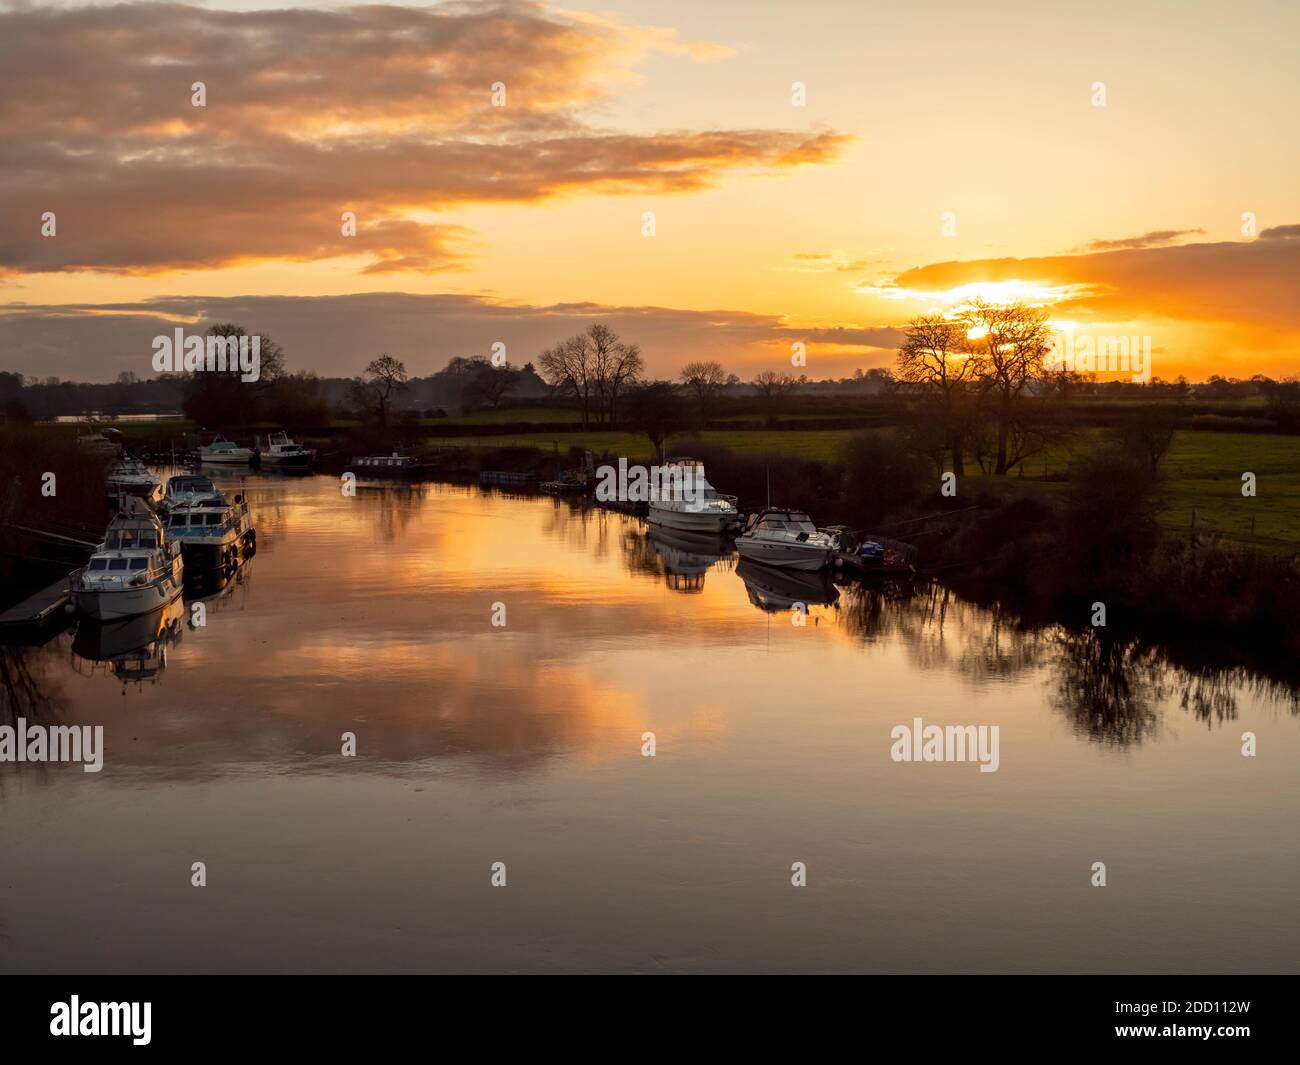 Schöner Sonnenuntergang Himmel spiegelt sich in der ruhigen Wasser des Flusses Ouse mit verankerten Booten in der Nähe von York, England Stockfoto